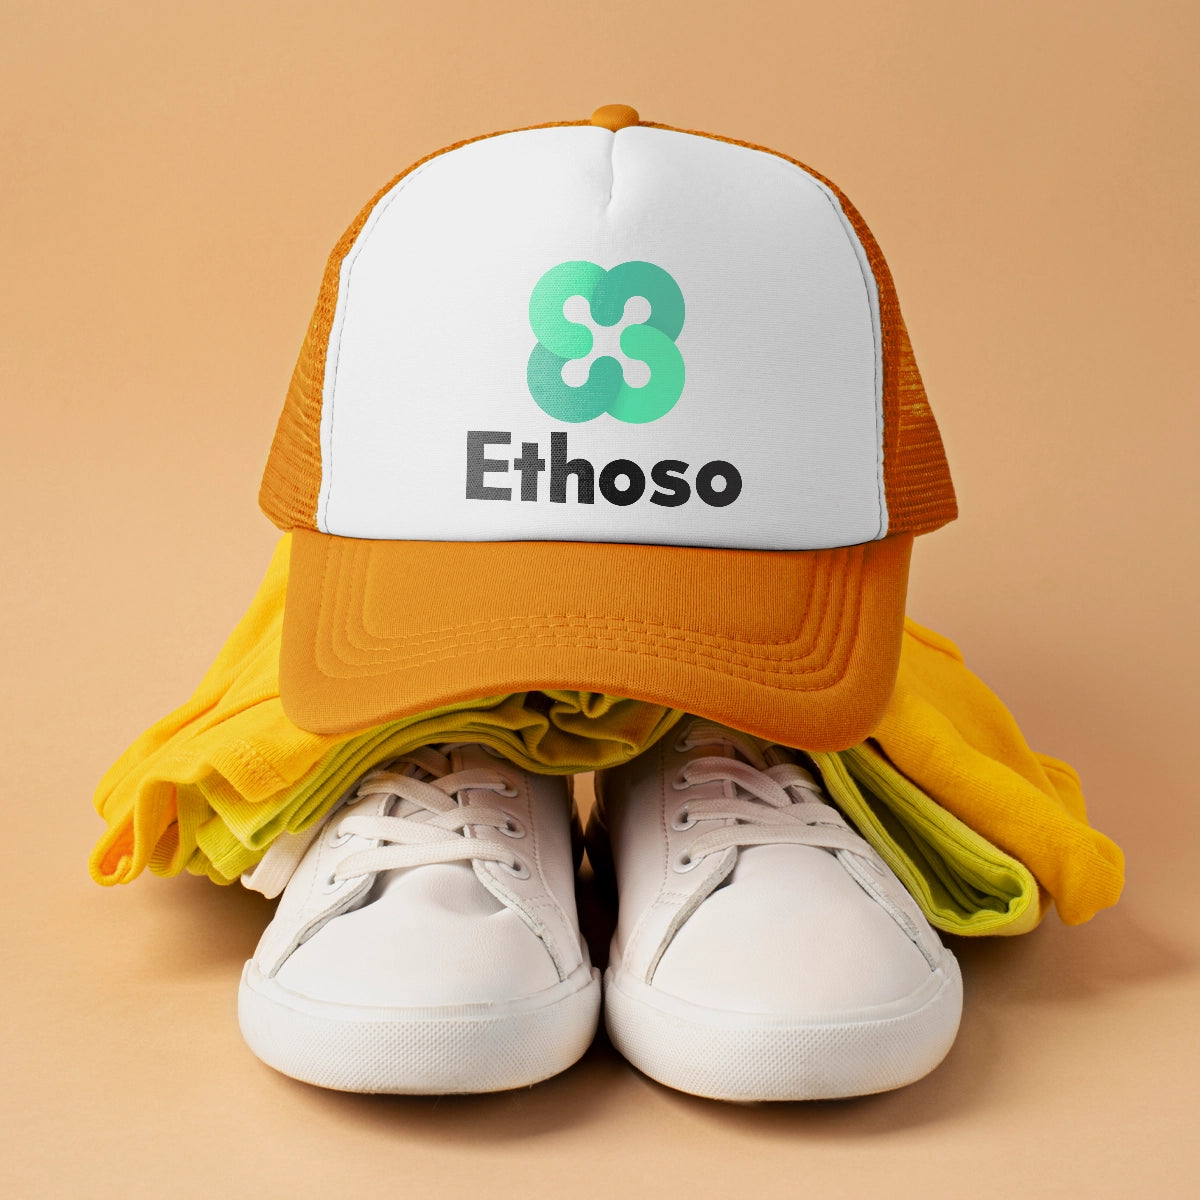 ethoso.com